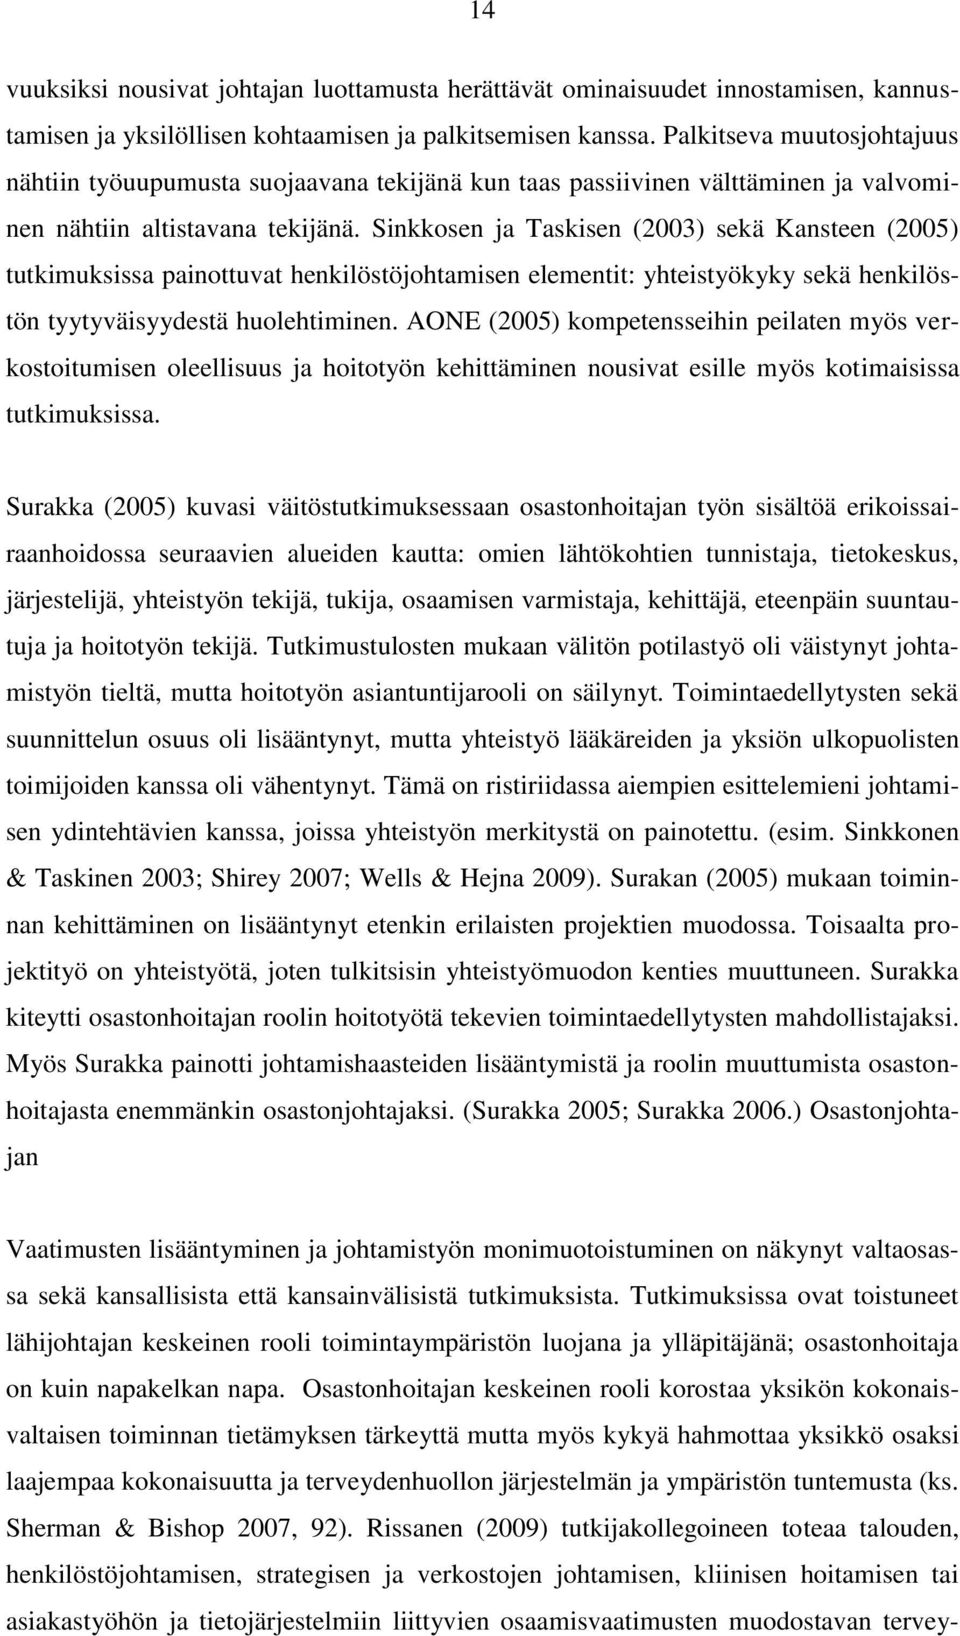 Sinkkosen ja Taskisen (2003) sekä Kansteen (2005) tutkimuksissa painottuvat henkilöstöjohtamisen elementit: yhteistyökyky sekä henkilöstön tyytyväisyydestä huolehtiminen.